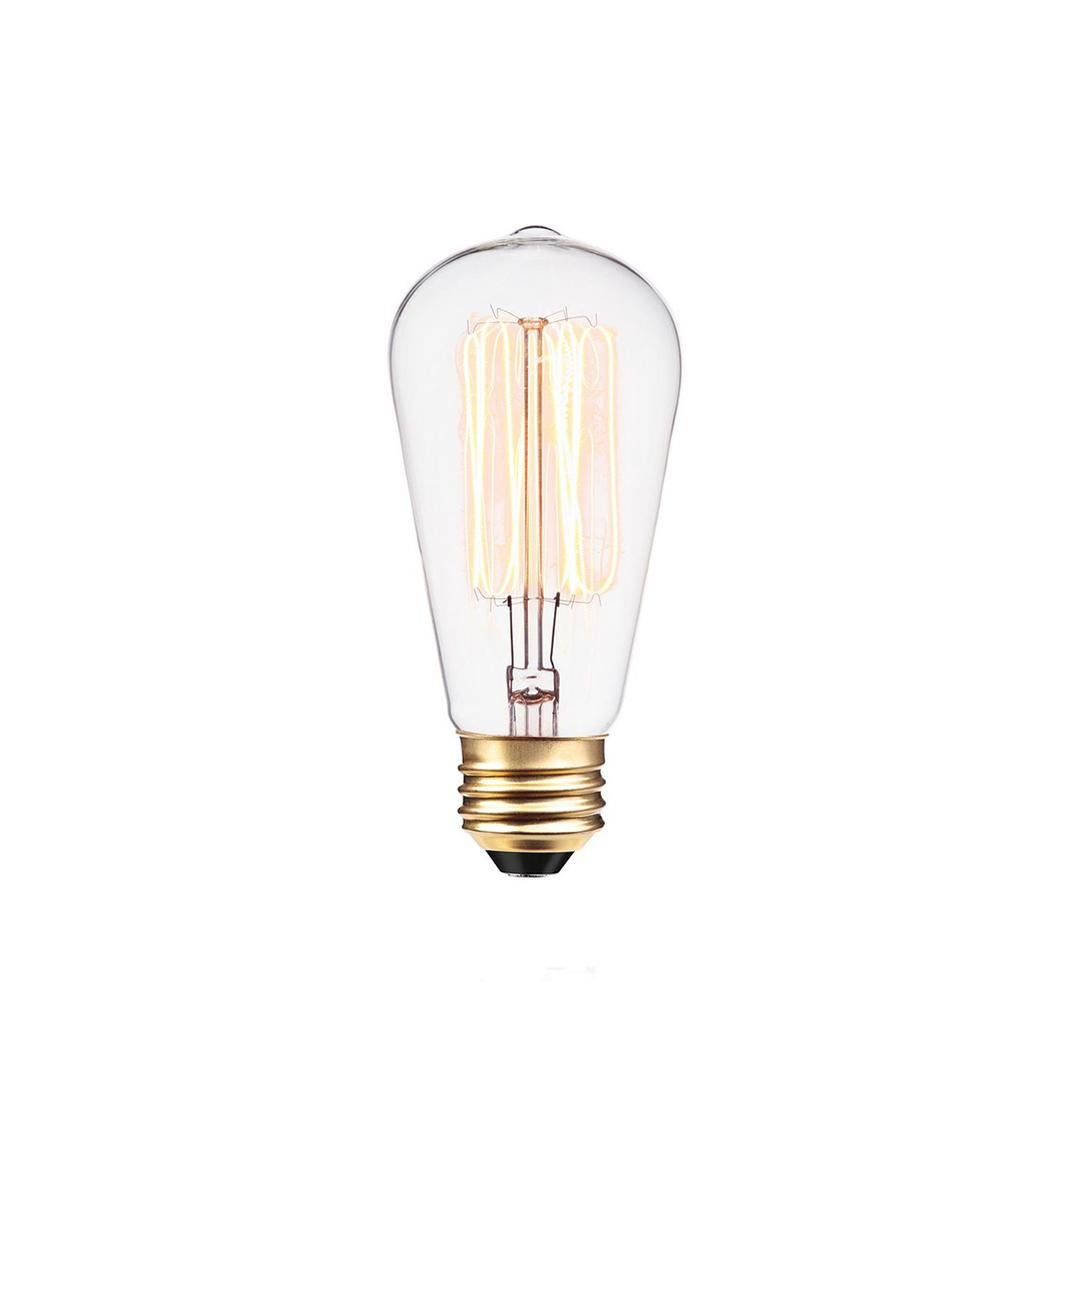 Alquimia Cono: Contemporary Polished Conical Copper Pendant Lamp  For Sale 6